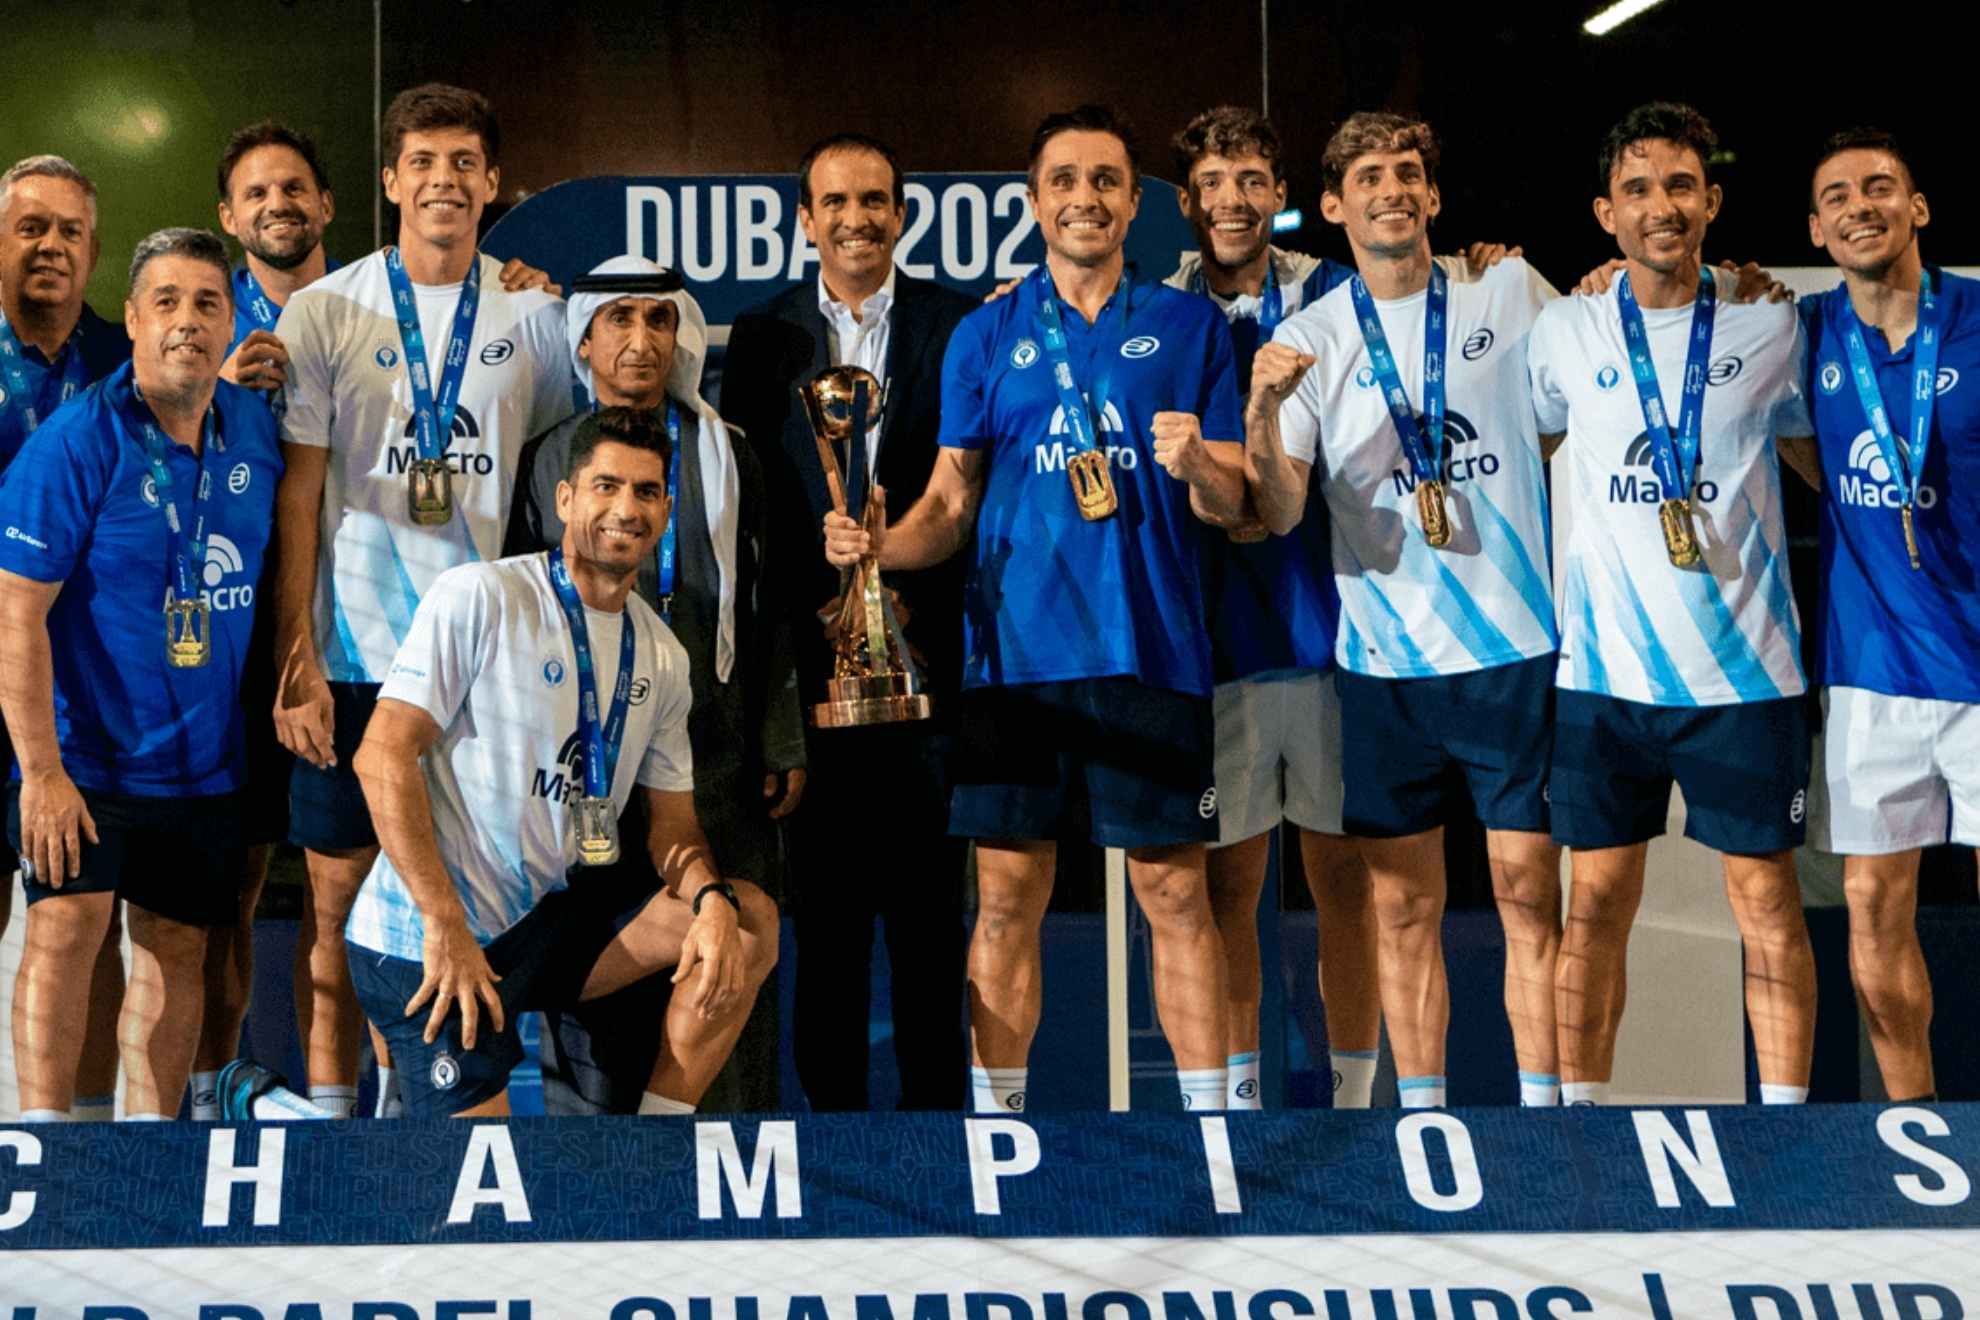 Los jugadores y cuerpo técnico de Argentina, junto a Luigi Carraro, presidente de la FIP, con la copa de campeones del mundo.